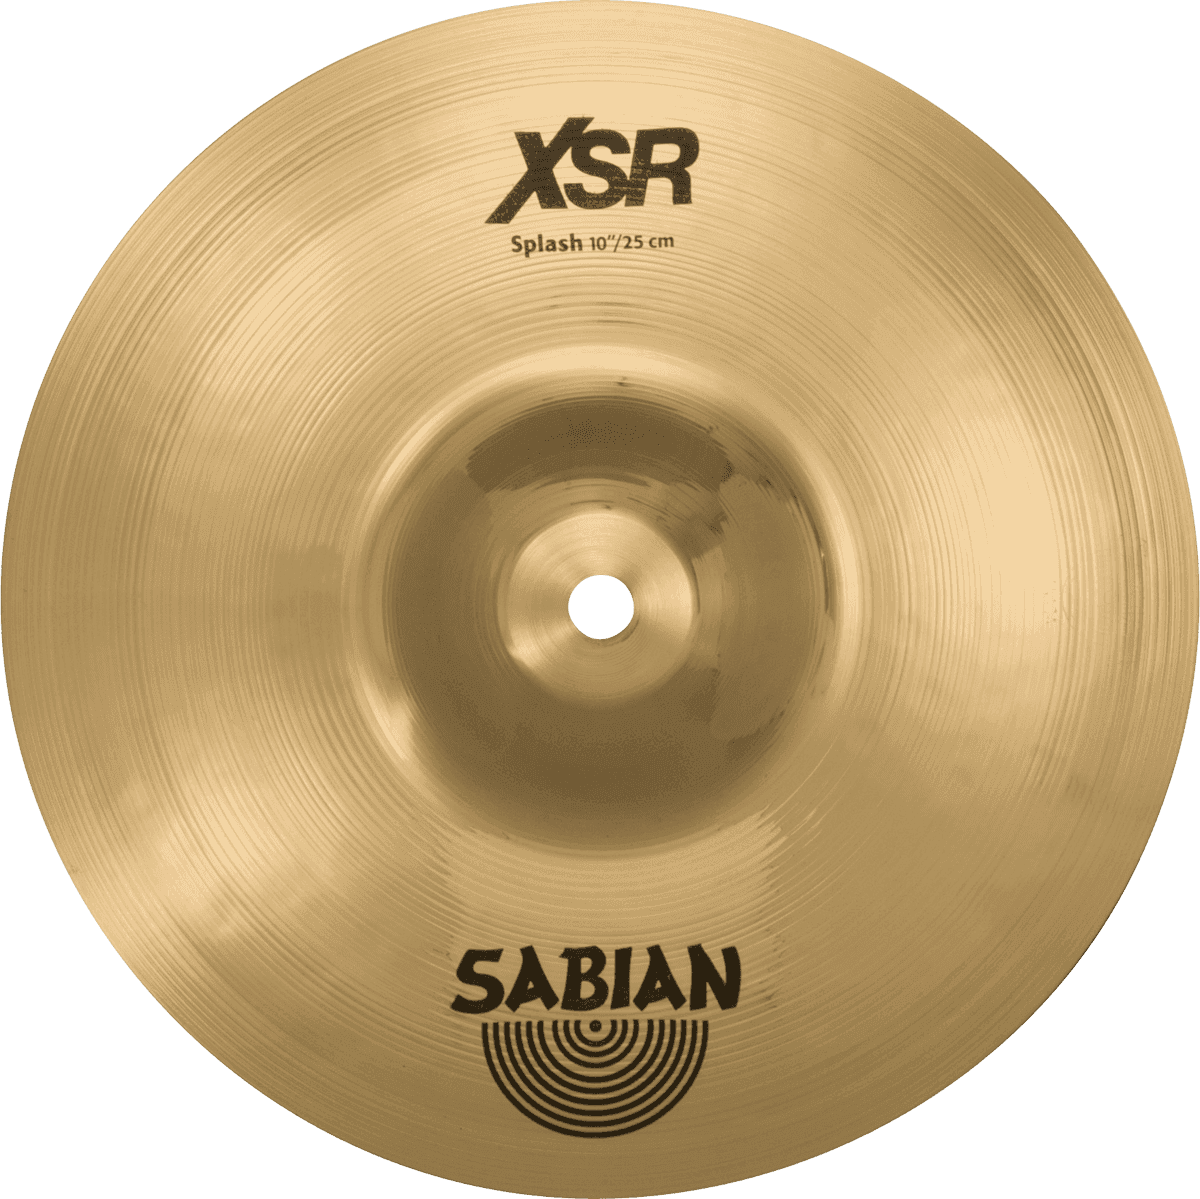 Sabian - Platillo XSR Splash, Tamaño: 10" Mod.XSR1005B_44